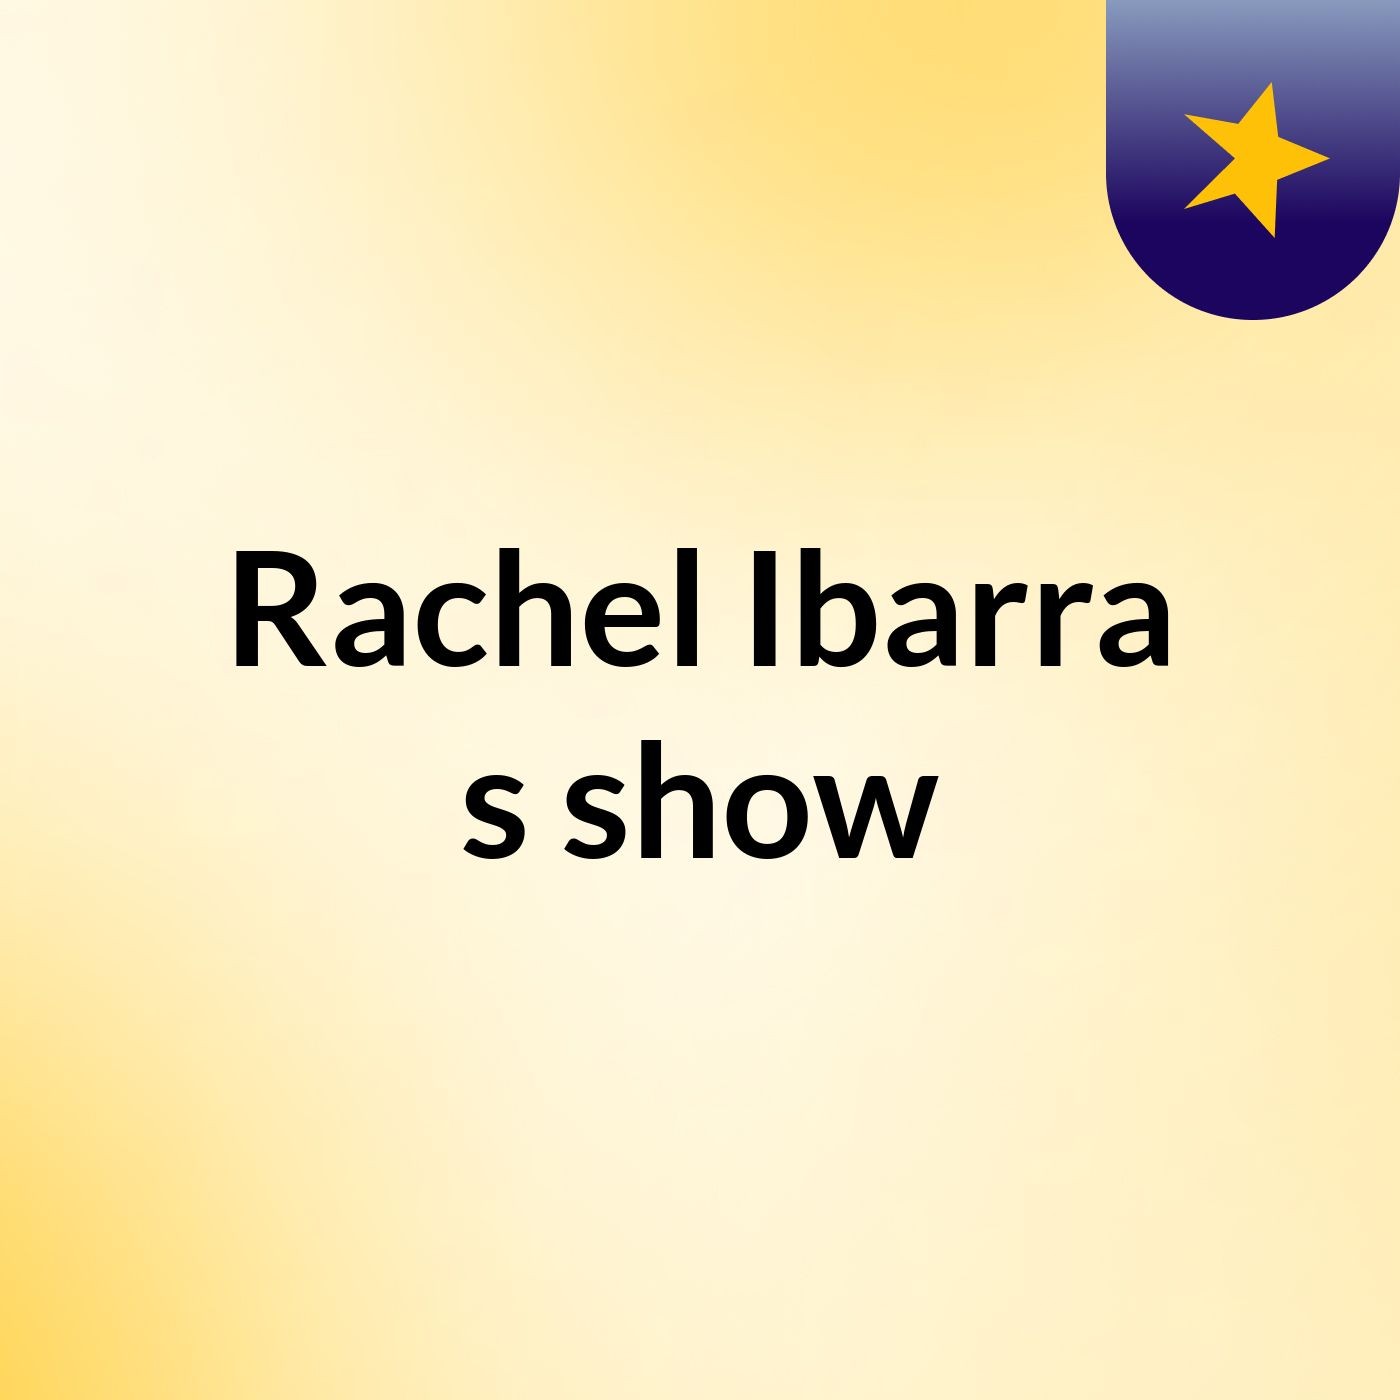 Rachel Ibarra's show